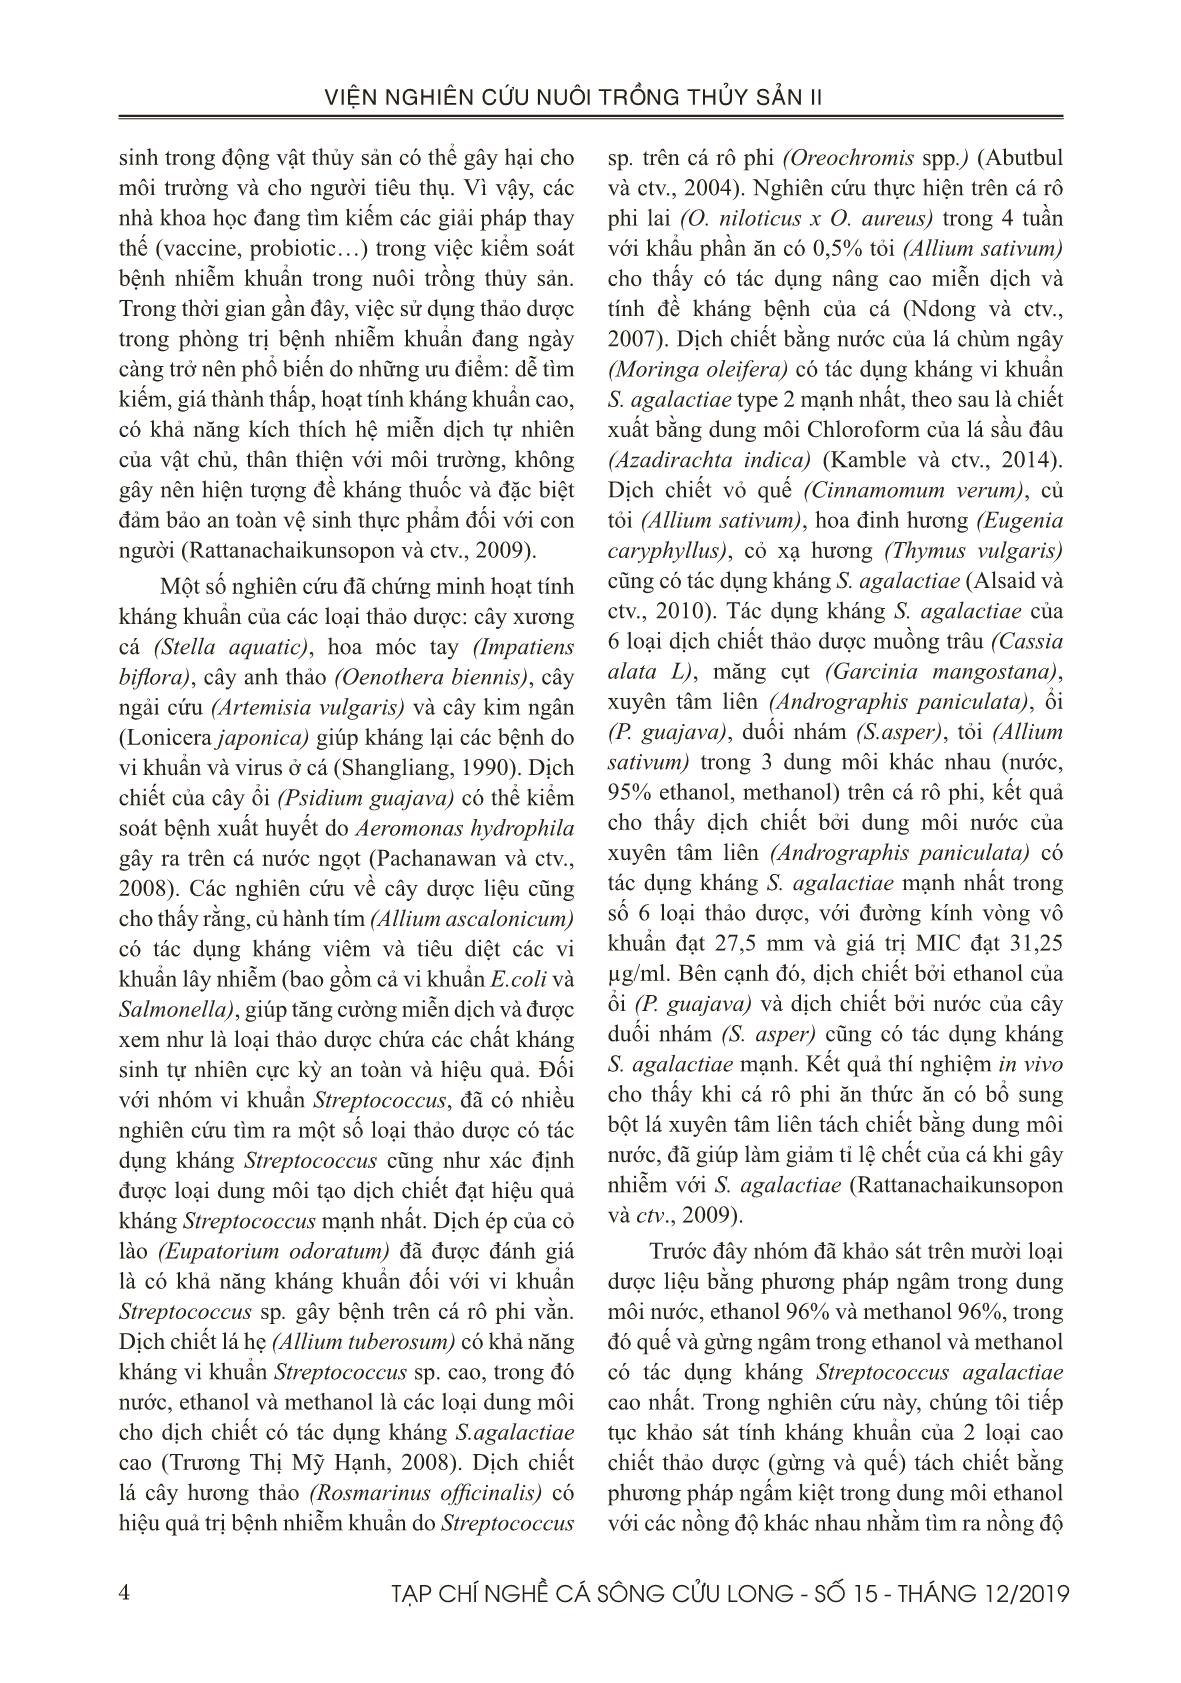 Tạp chí Nghề cá sông Cửu Long - Số 15 - Tháng 12/2019 trang 4